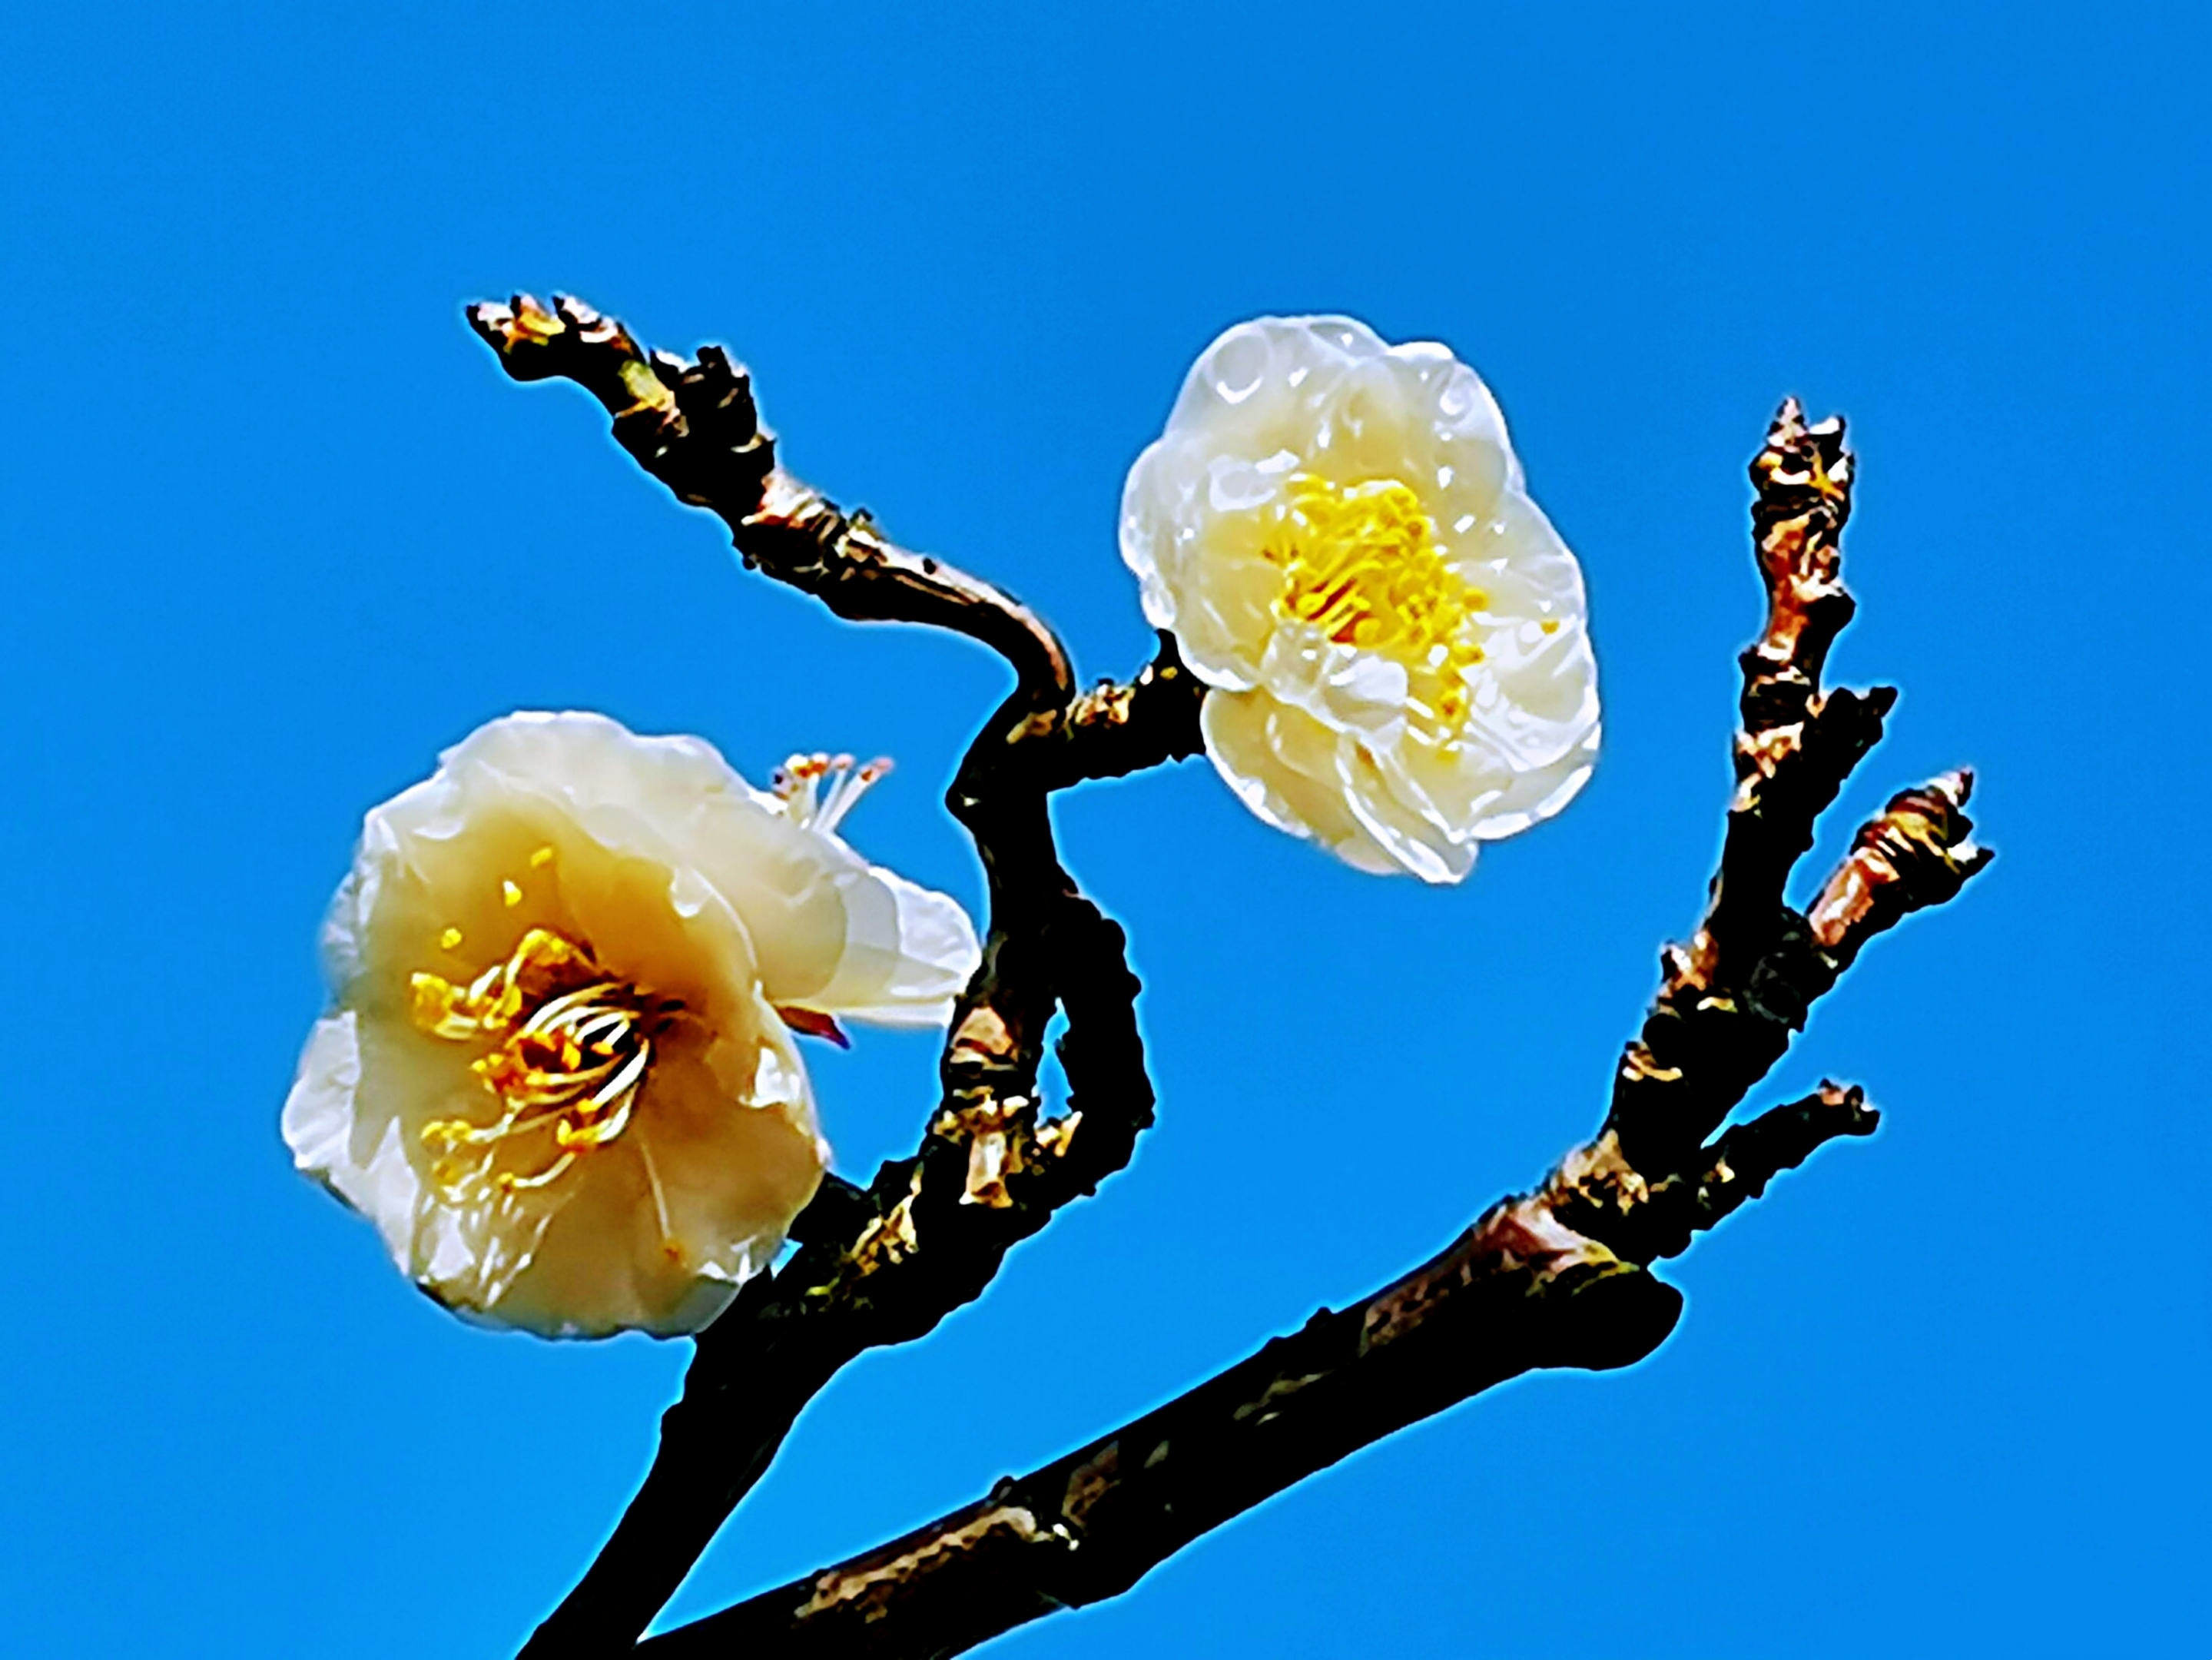 玉蝶龙游梅,简称龙游梅,是梅花的一个特殊品种,也是梅花中的珍品.